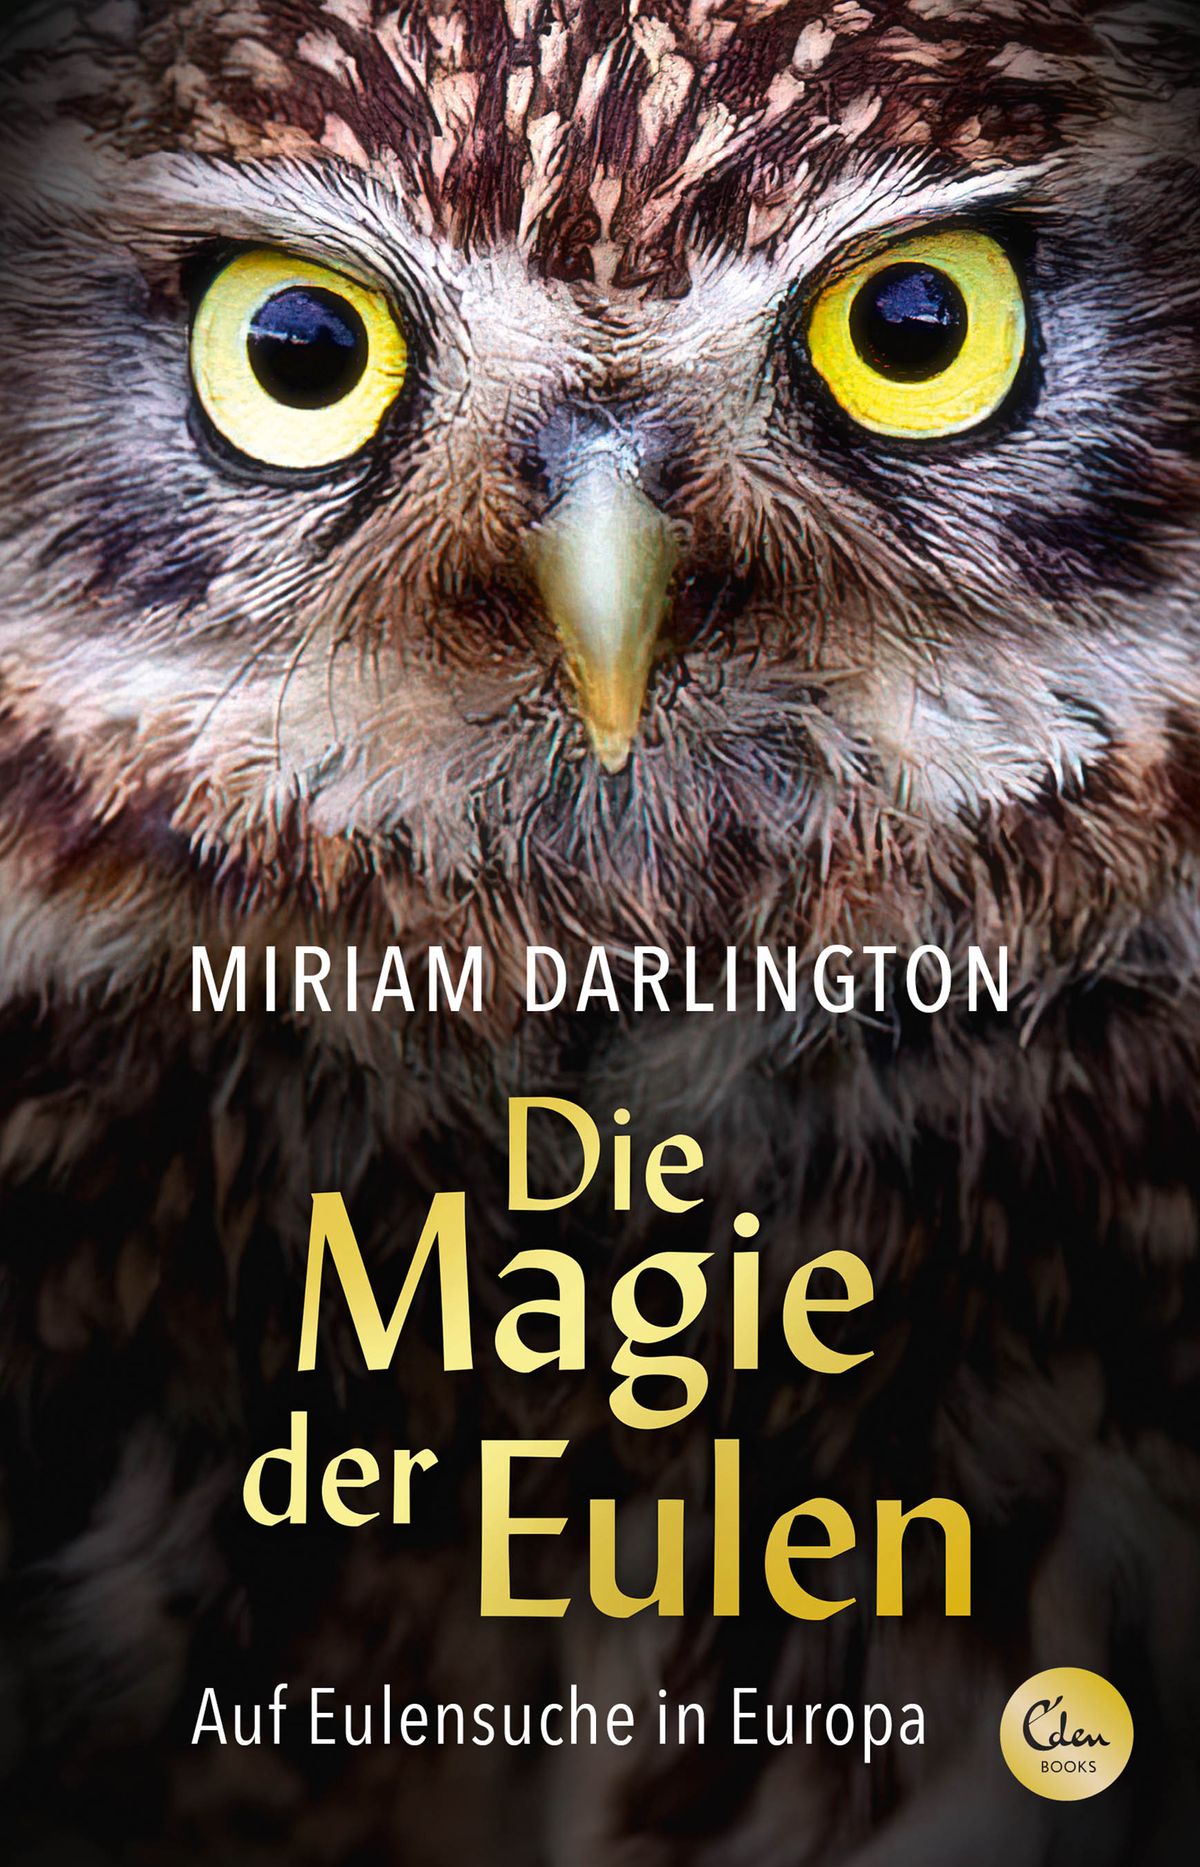 Buchcover: Miriam Darlington: Die Magie der Eulen